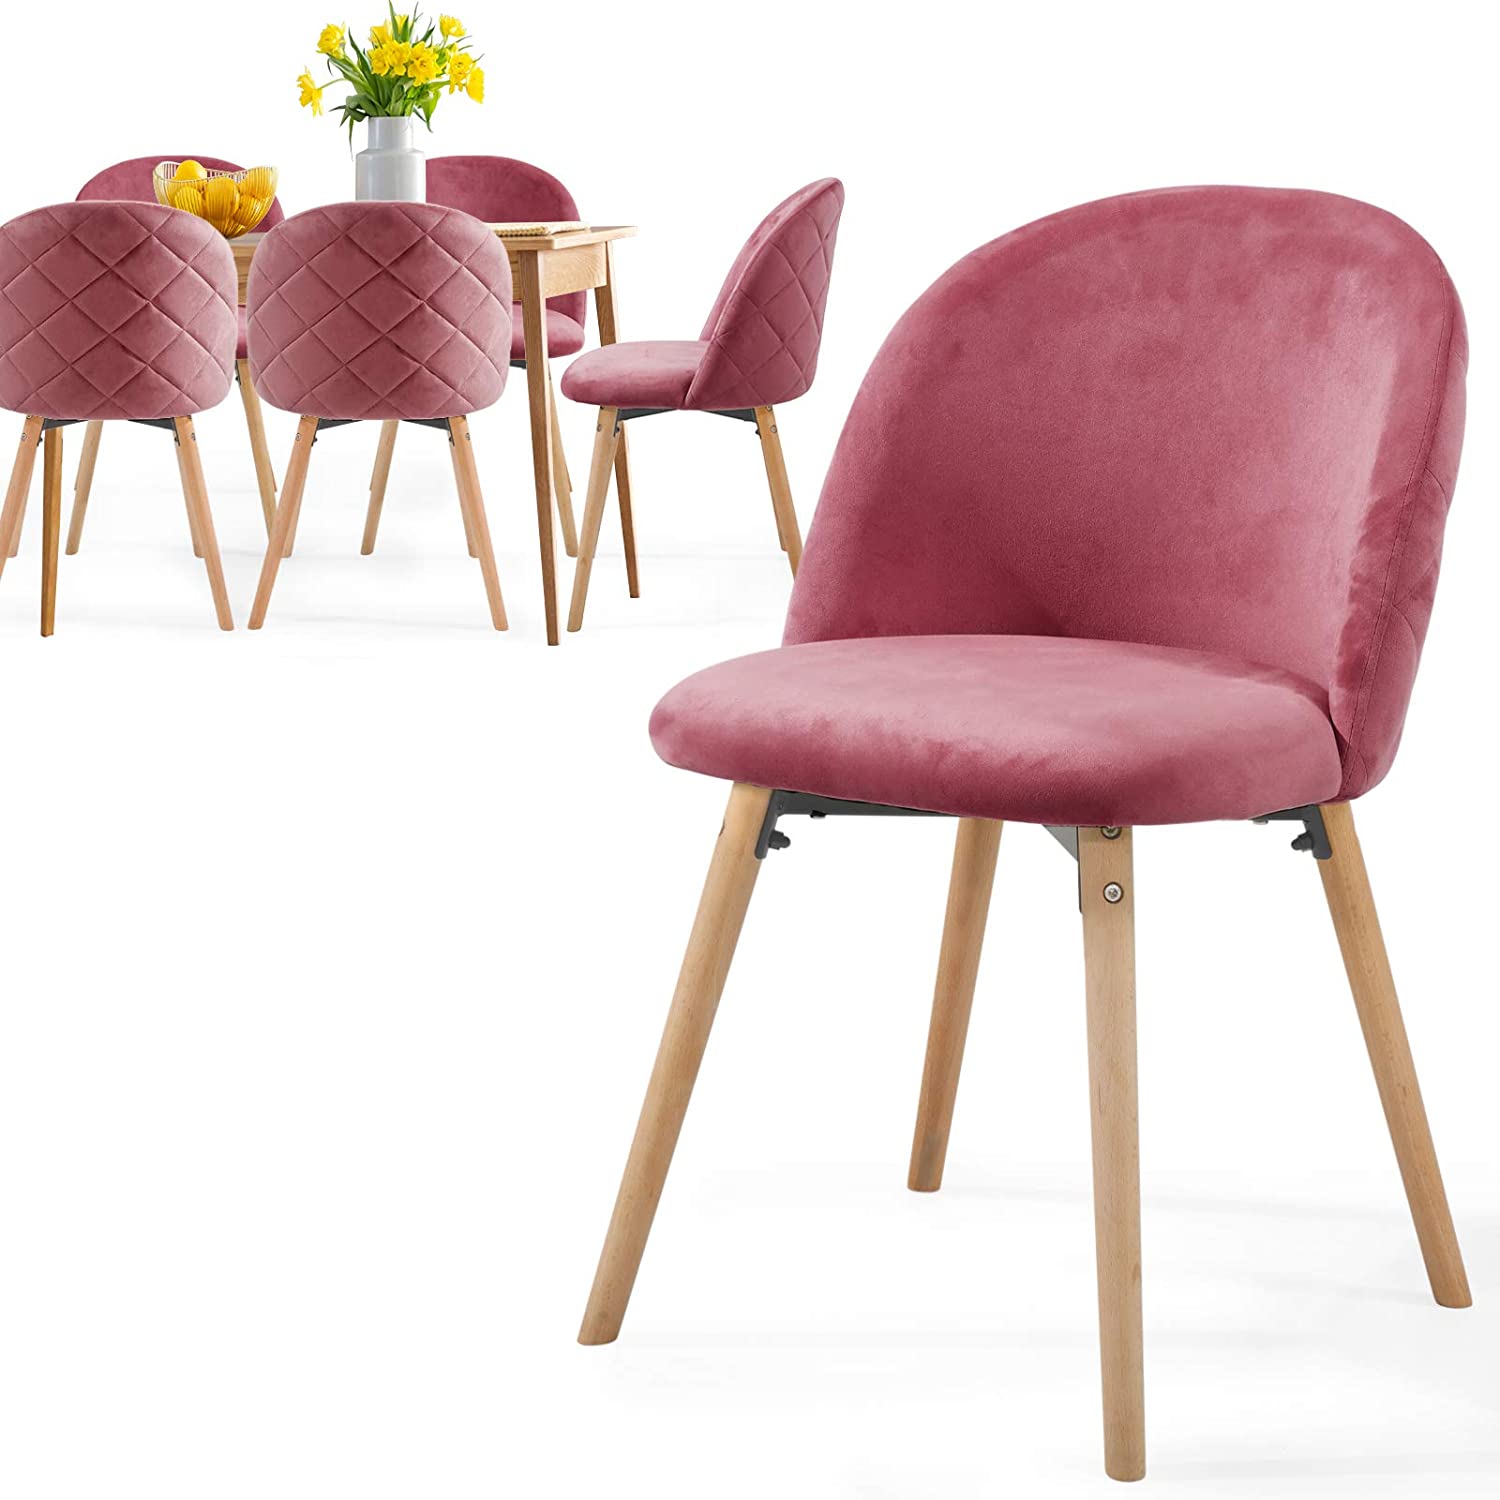 Eetkamerstoelen – Lounge stoelen – Scandinavisch – Retro – Vintage – Gestoffeerd – Set van 6 – Roze